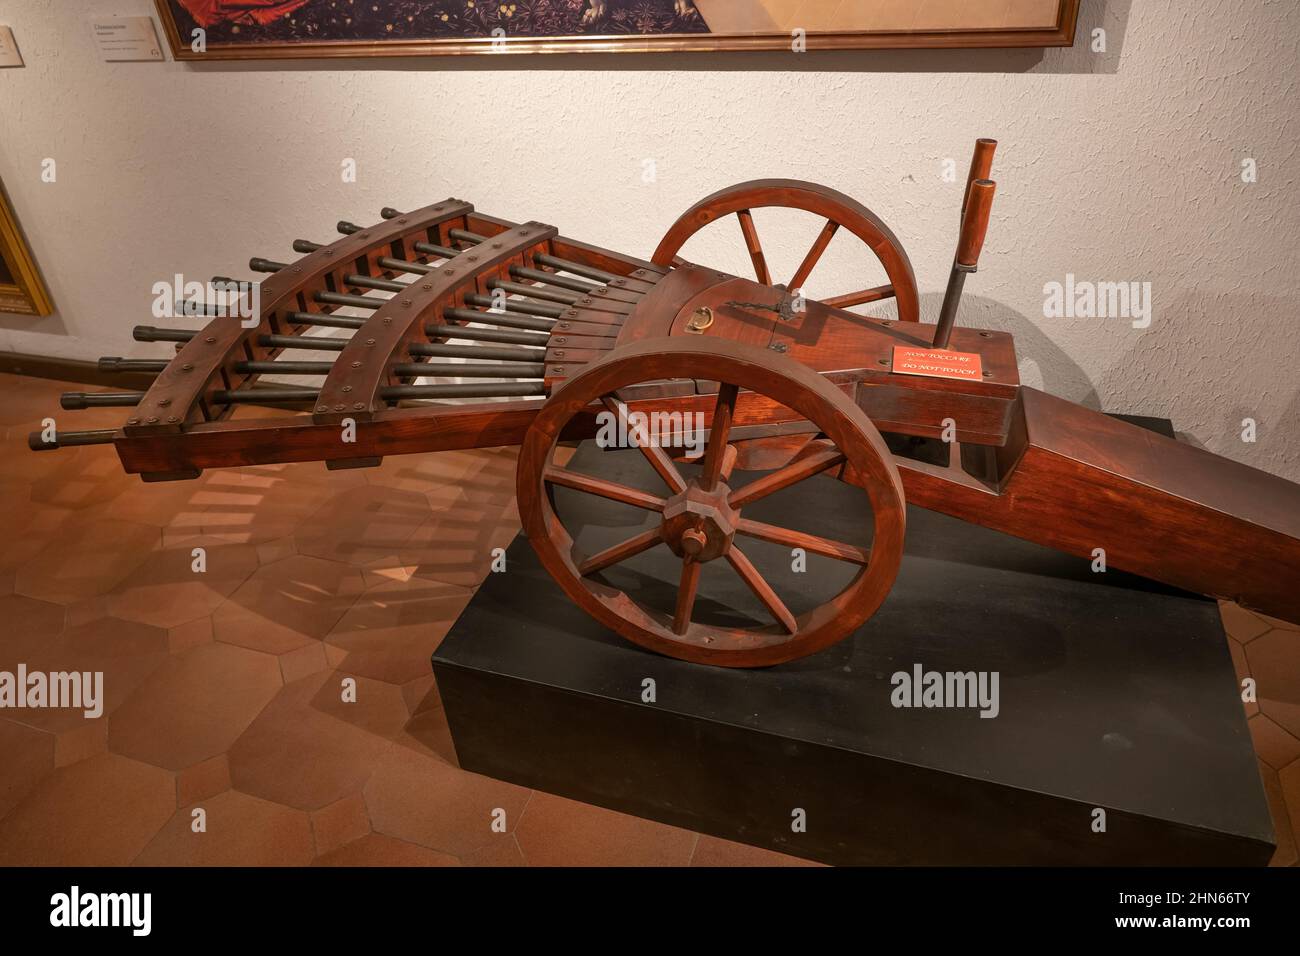 Pistolet multidirectionnel avec canons en forme de ventilateur sur roues, basé sur le dessin de Leonardo, Musée Leonardo Da Vinci à Rome, Italie. Banque D'Images